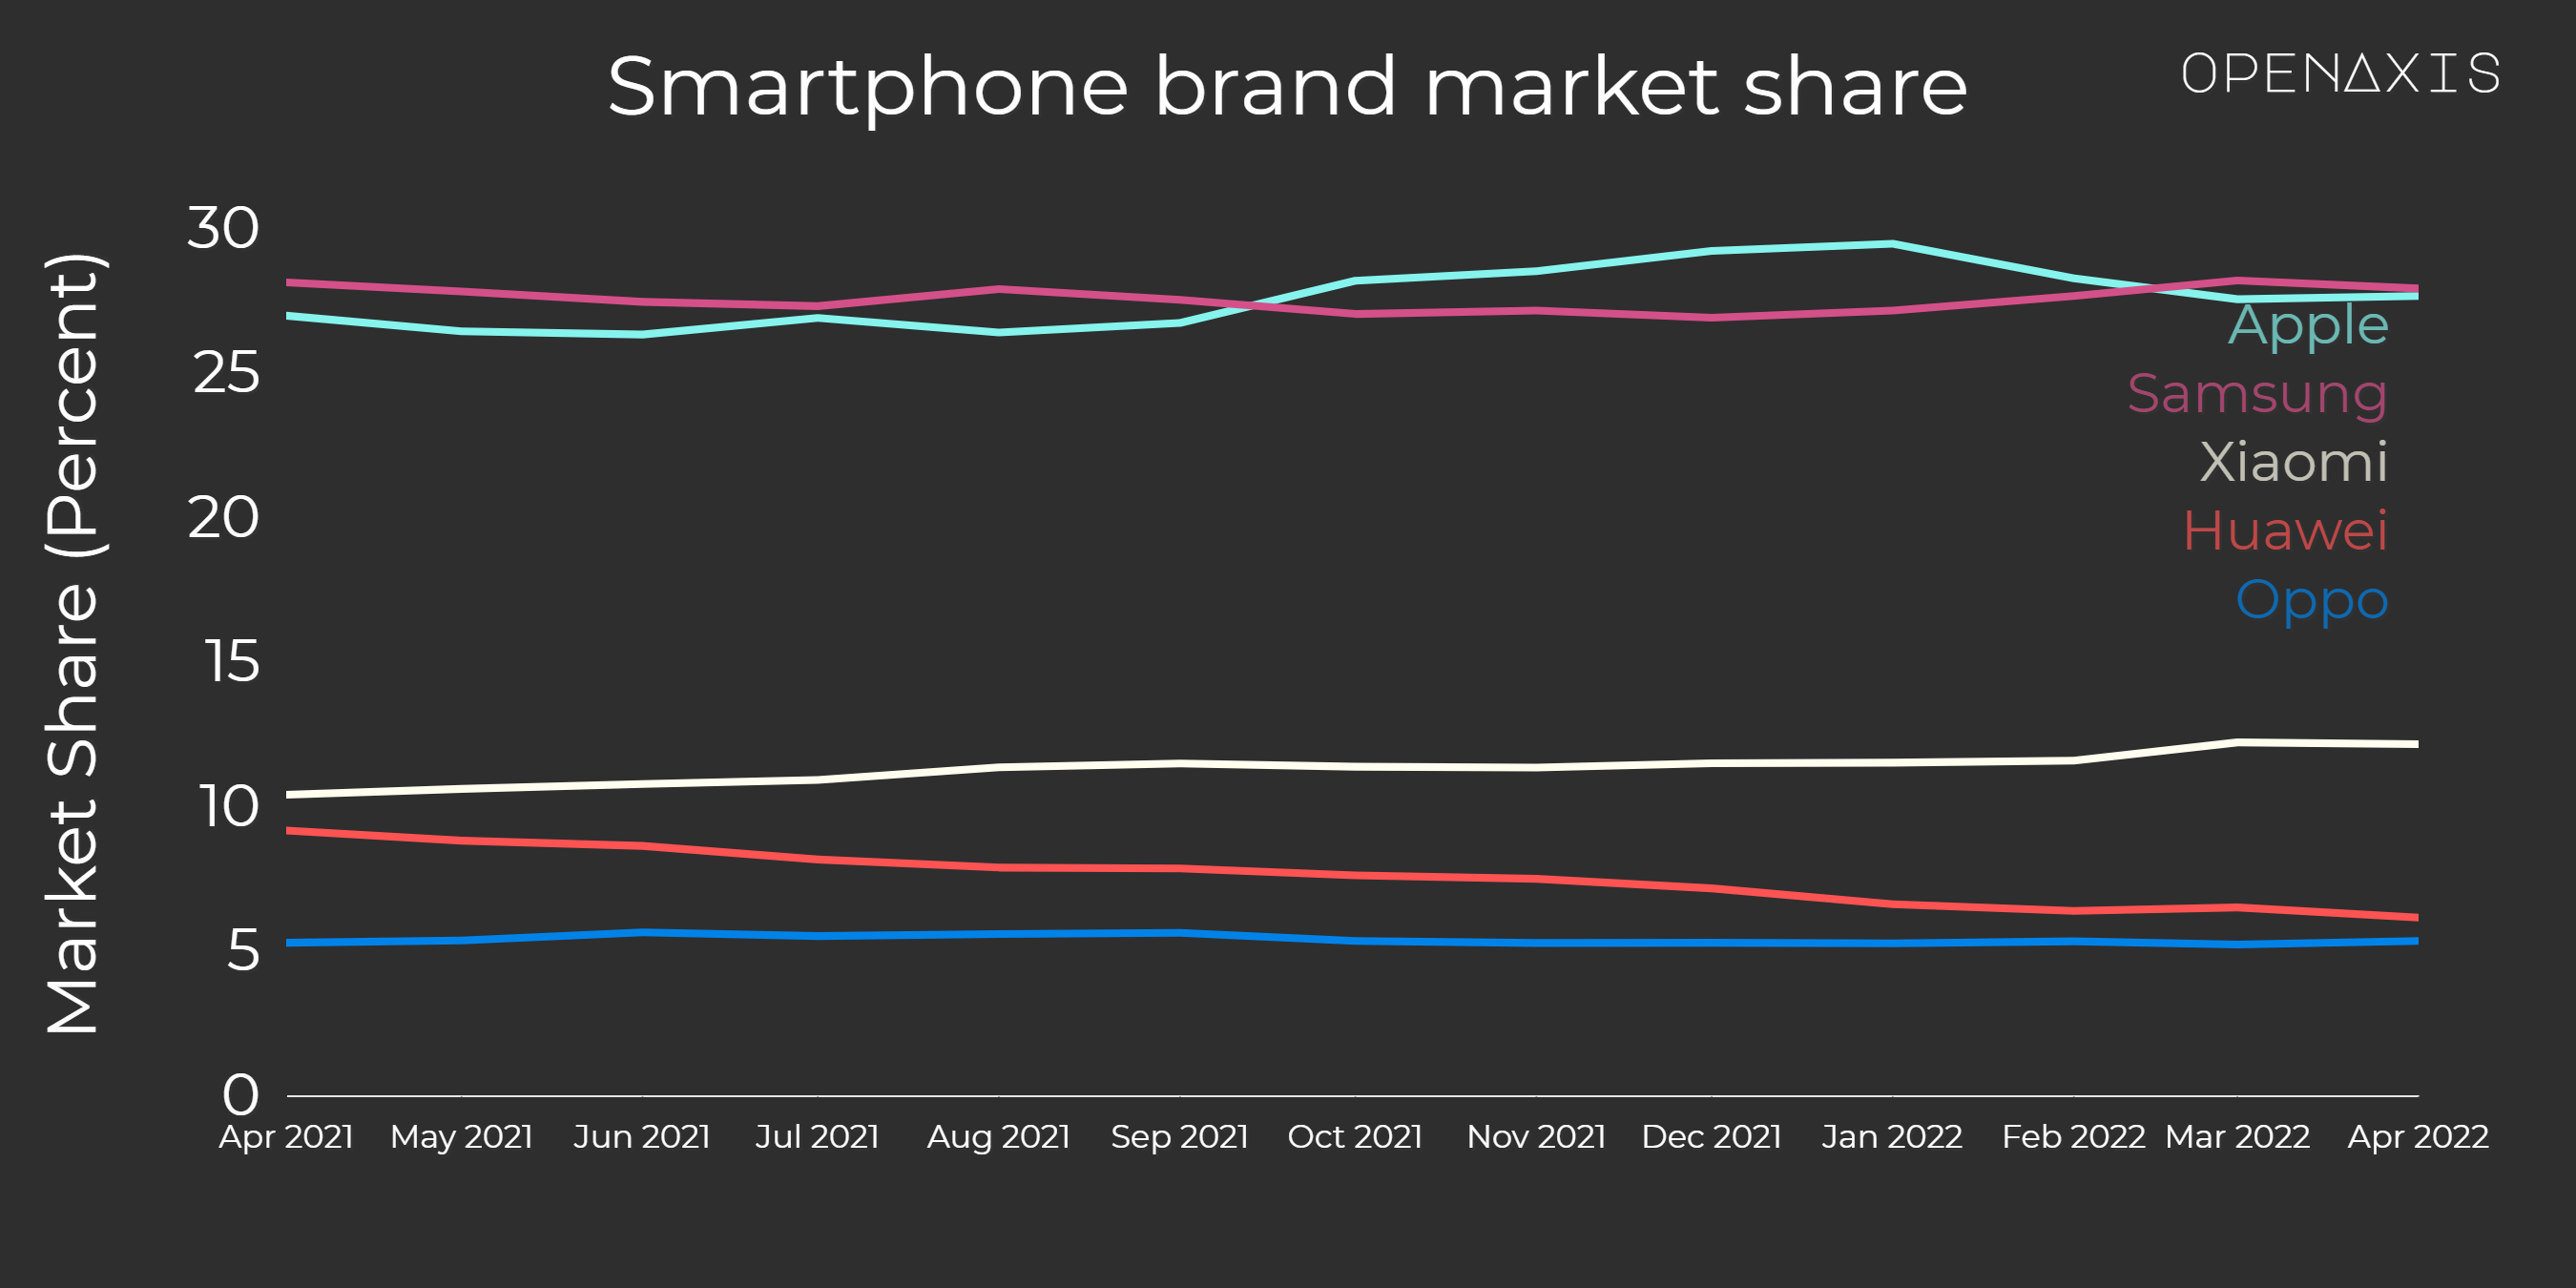 "Smartphone brand market share"